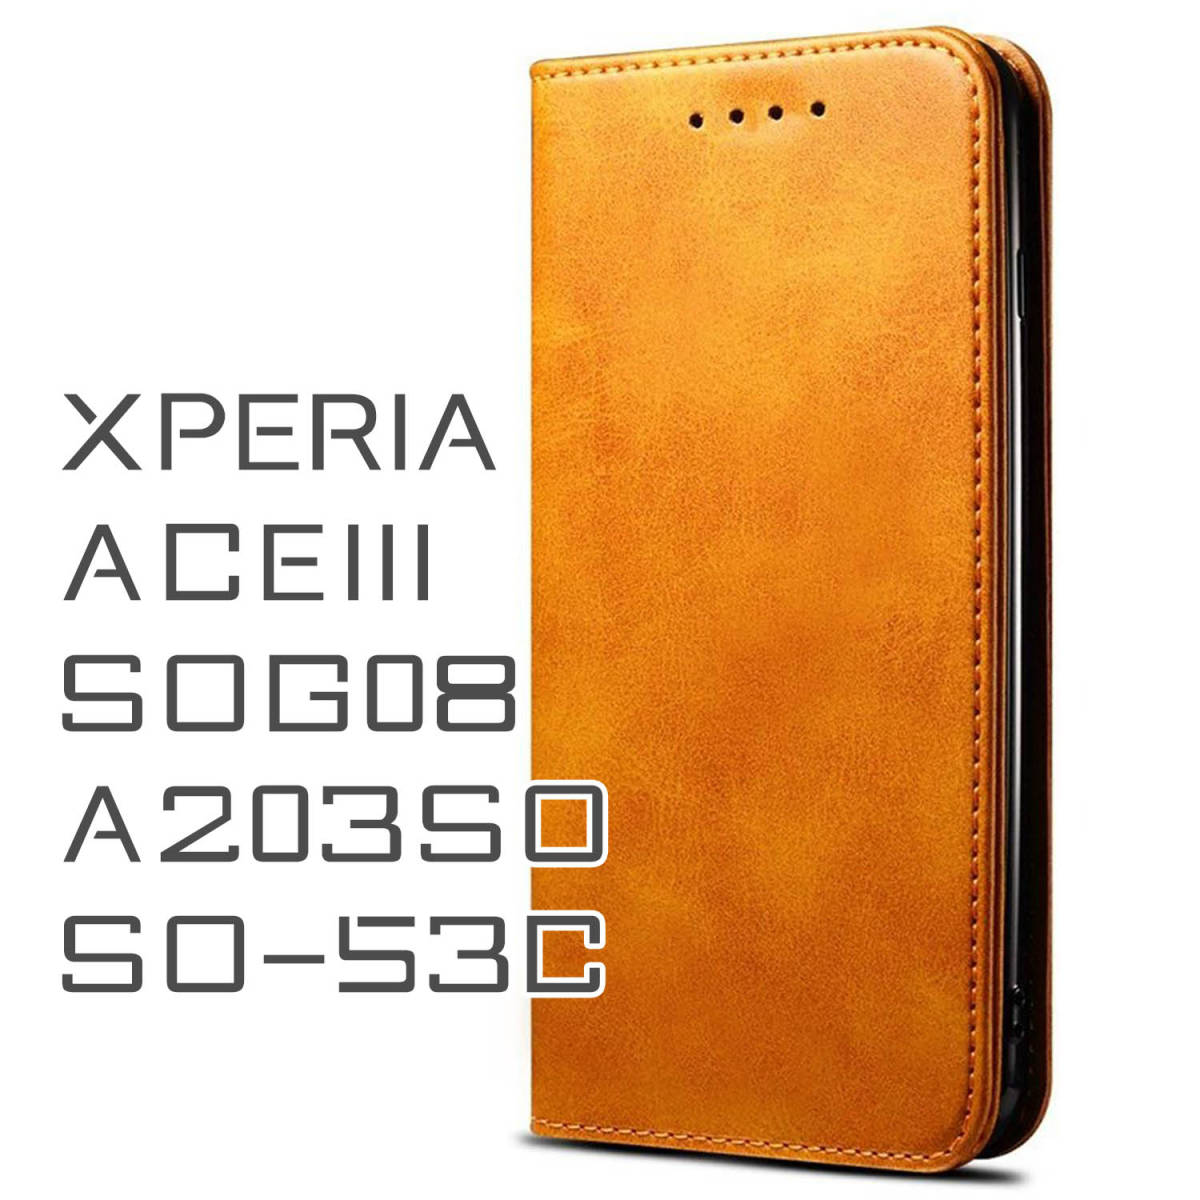 Xperia ACEIII ケース 手帳型 お洒落 茶色 ブラウン 茶 SOG08 SO53C ACE3 カバー A203SO シンプル 革 レザー スマホケース 送料無料 安い_画像1